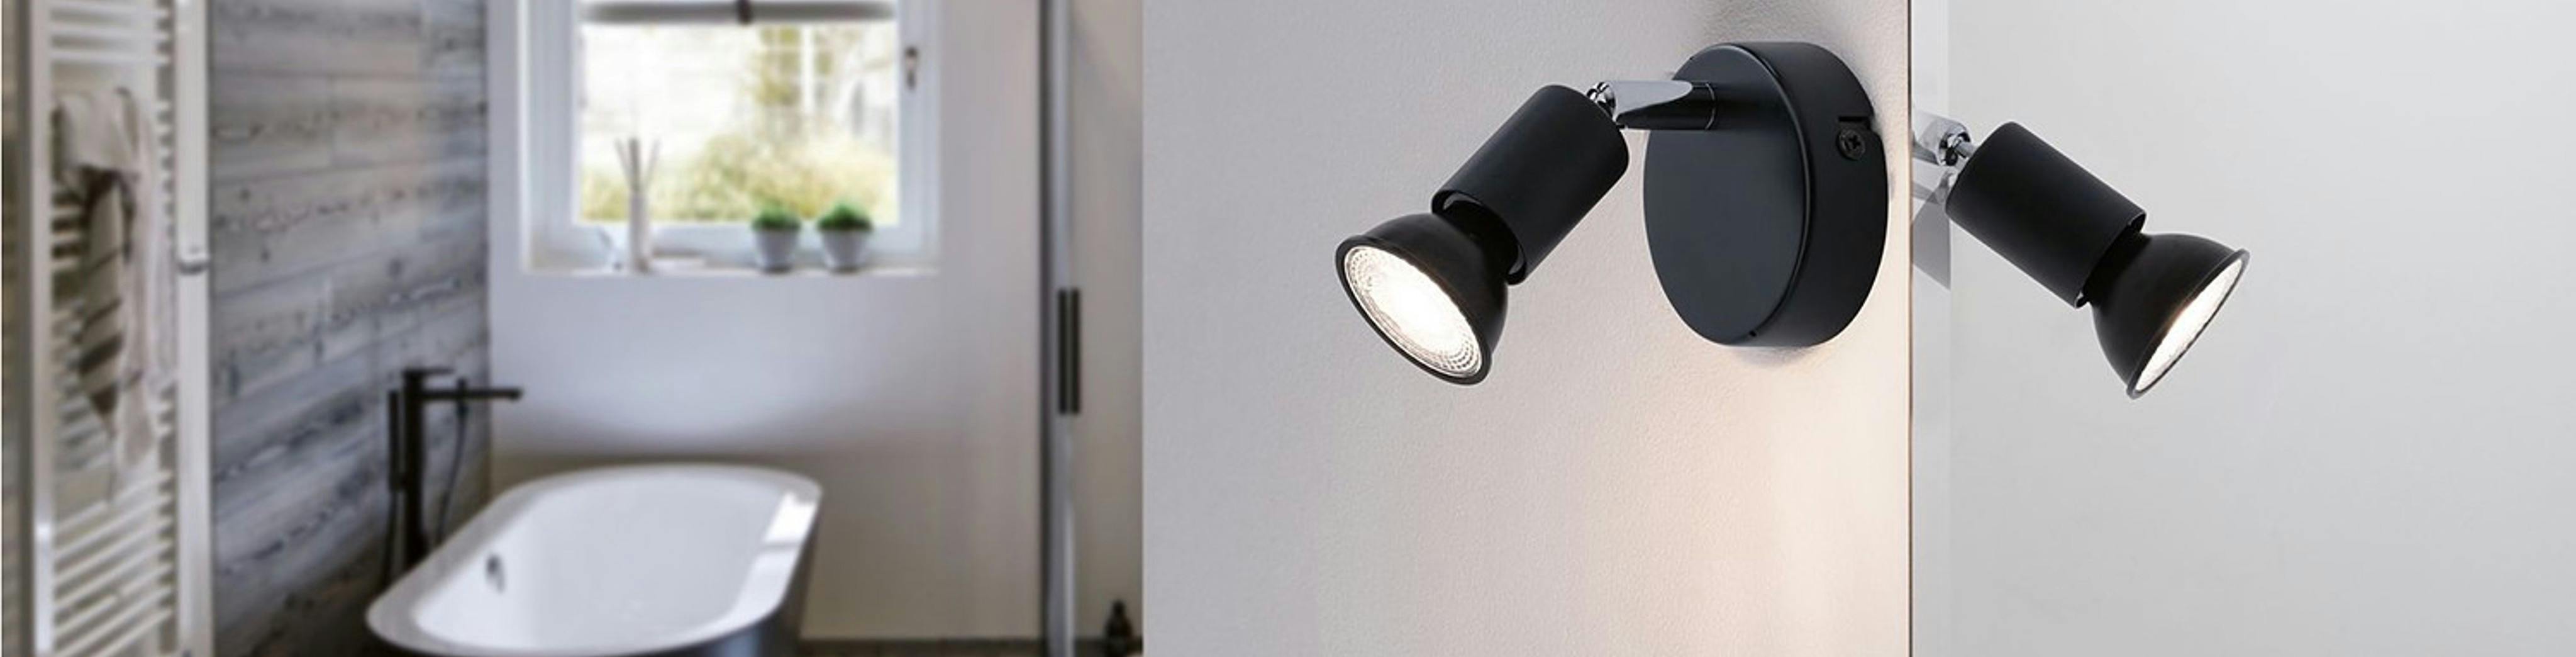 In bestem Licht: 5 Tipps für die richtige Beleuchtung in eurem Zuhause